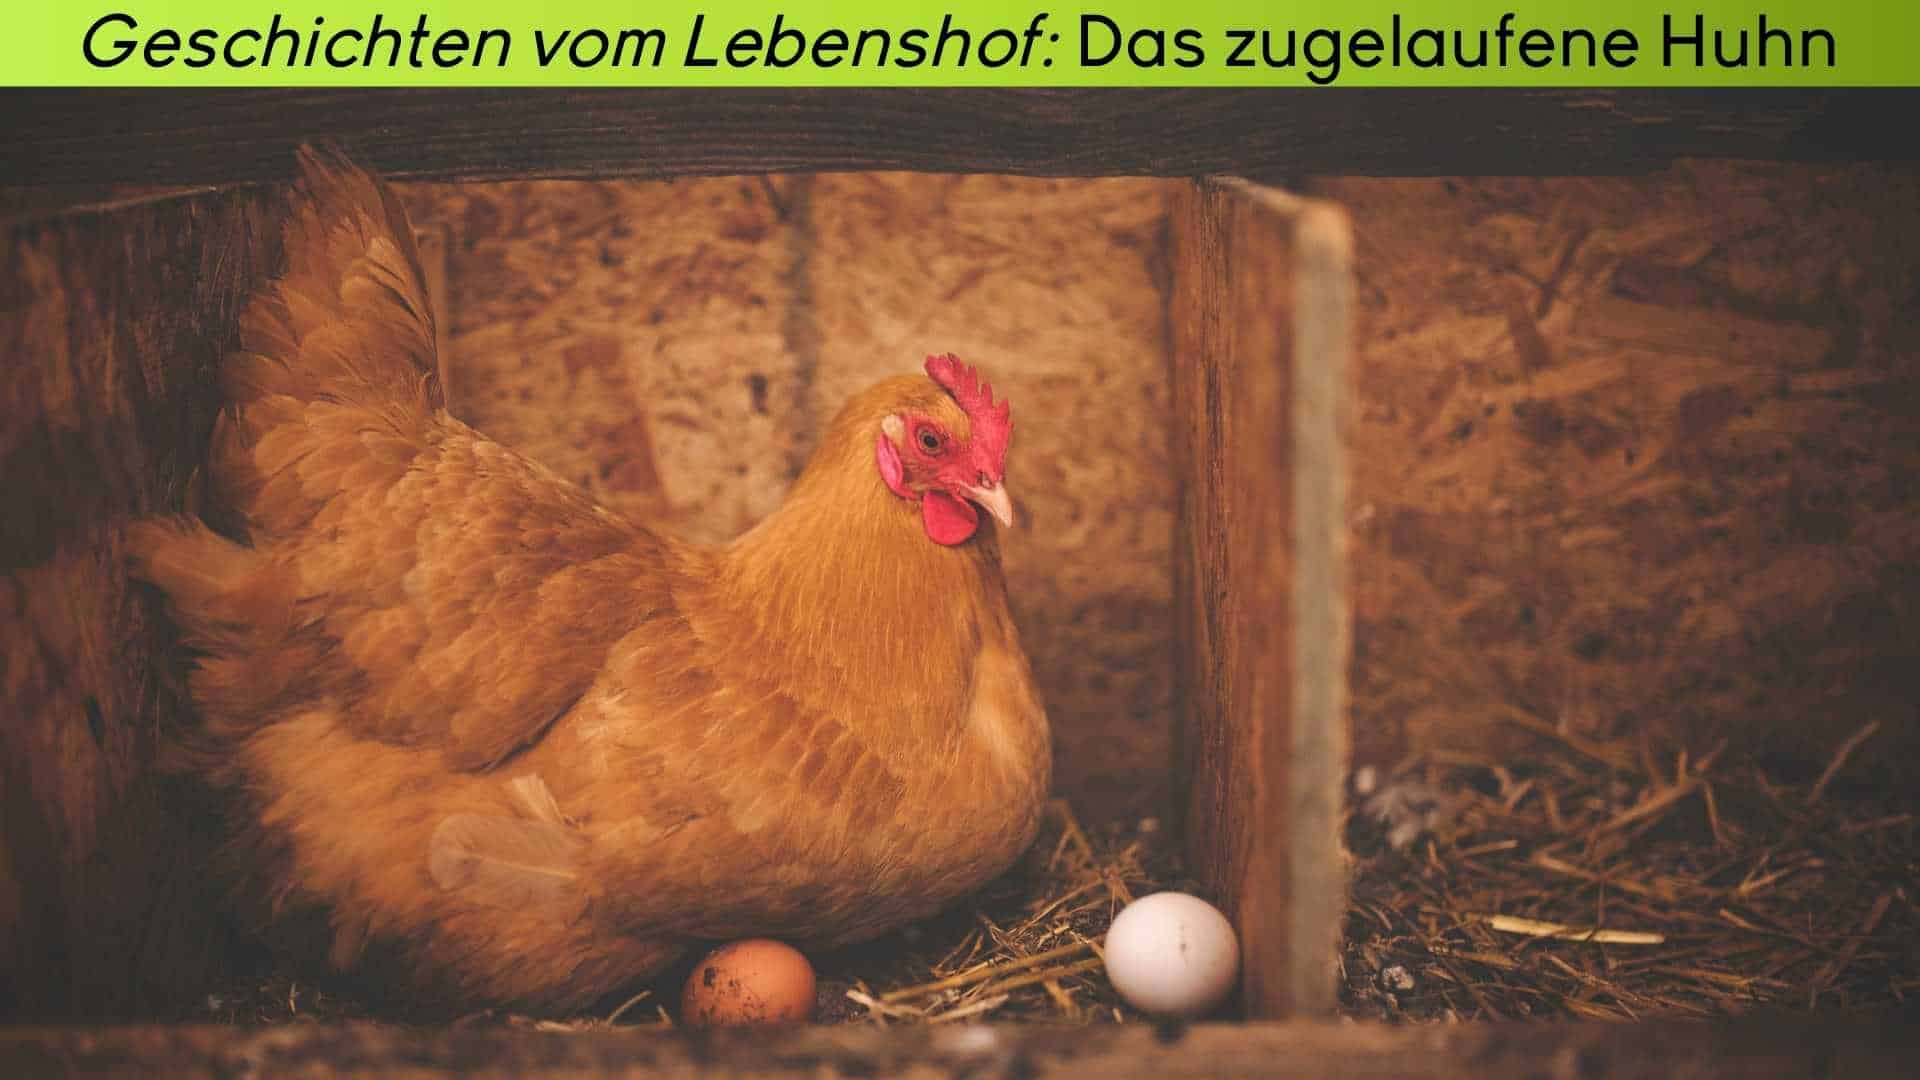 Ein braunes Huhn im Legenest mit Eiern